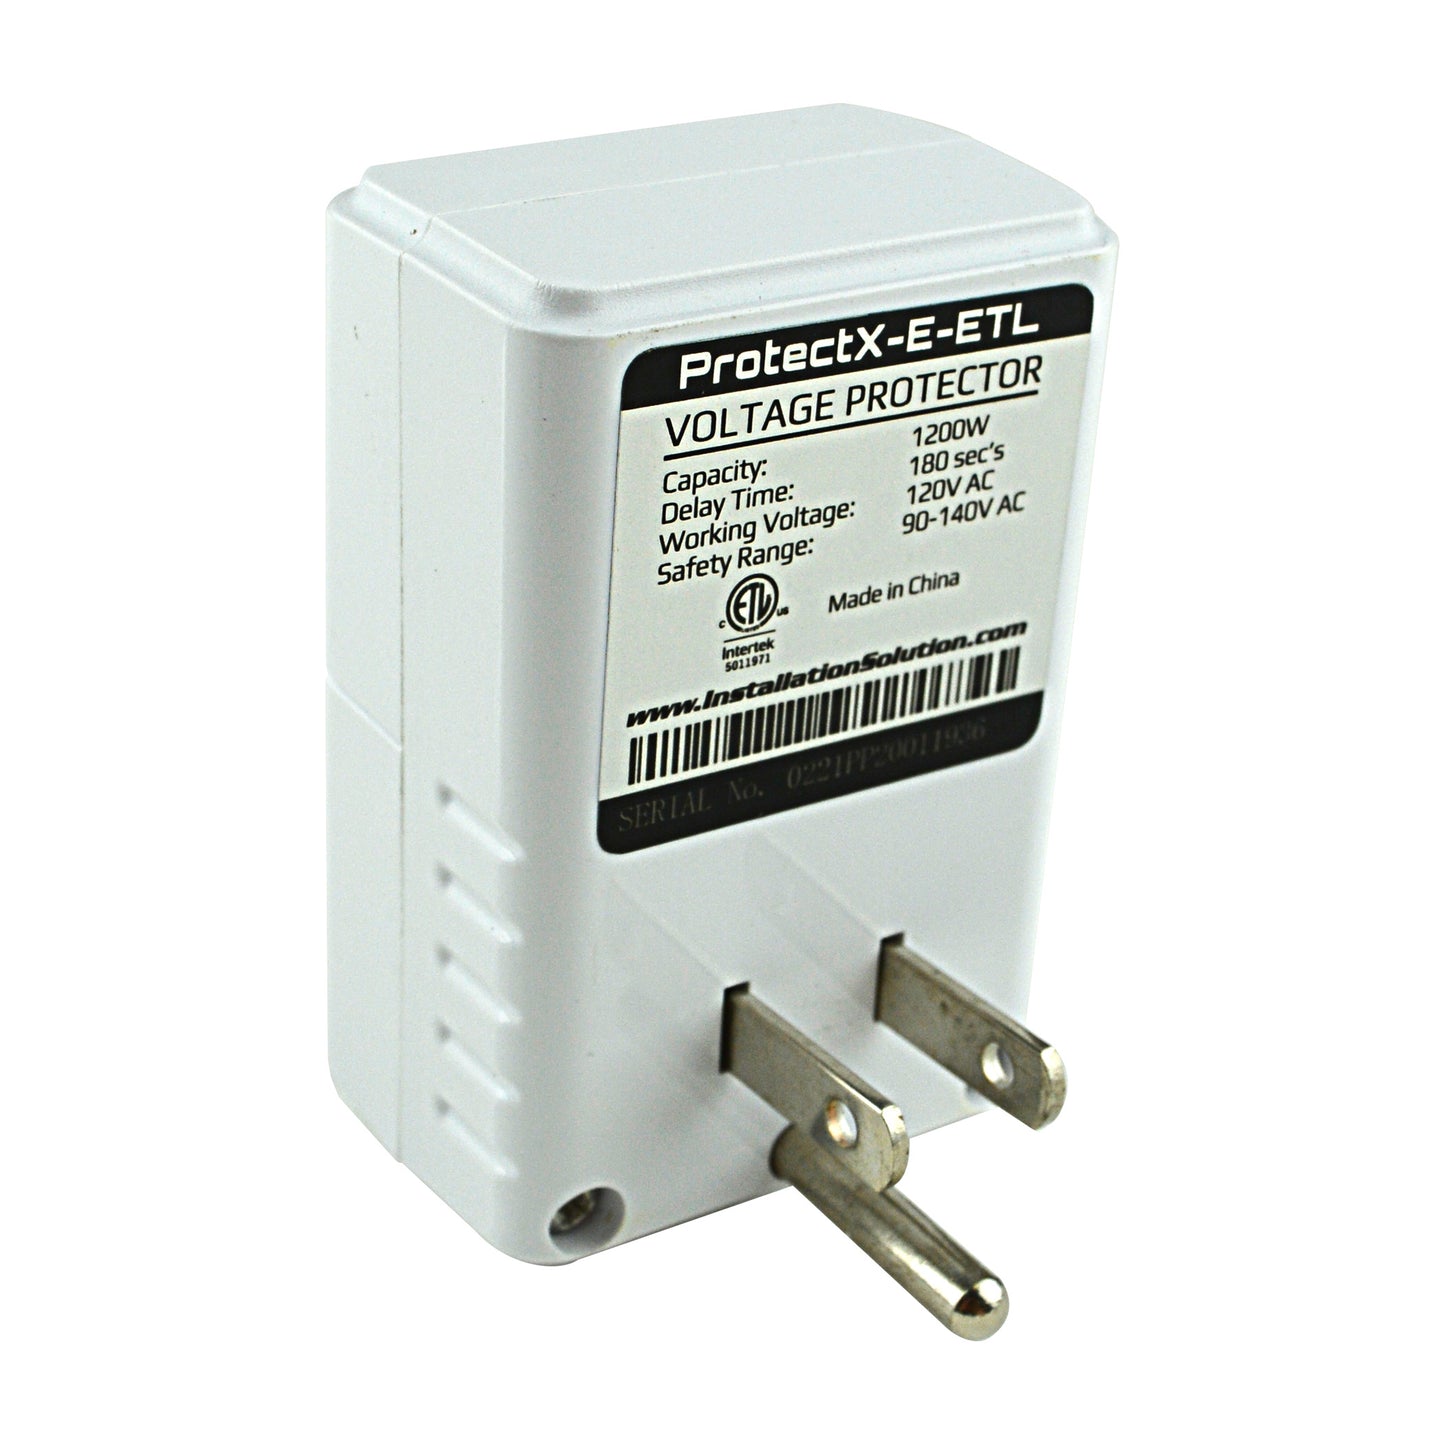 PROTECTX-E-ETL Voltage Protector